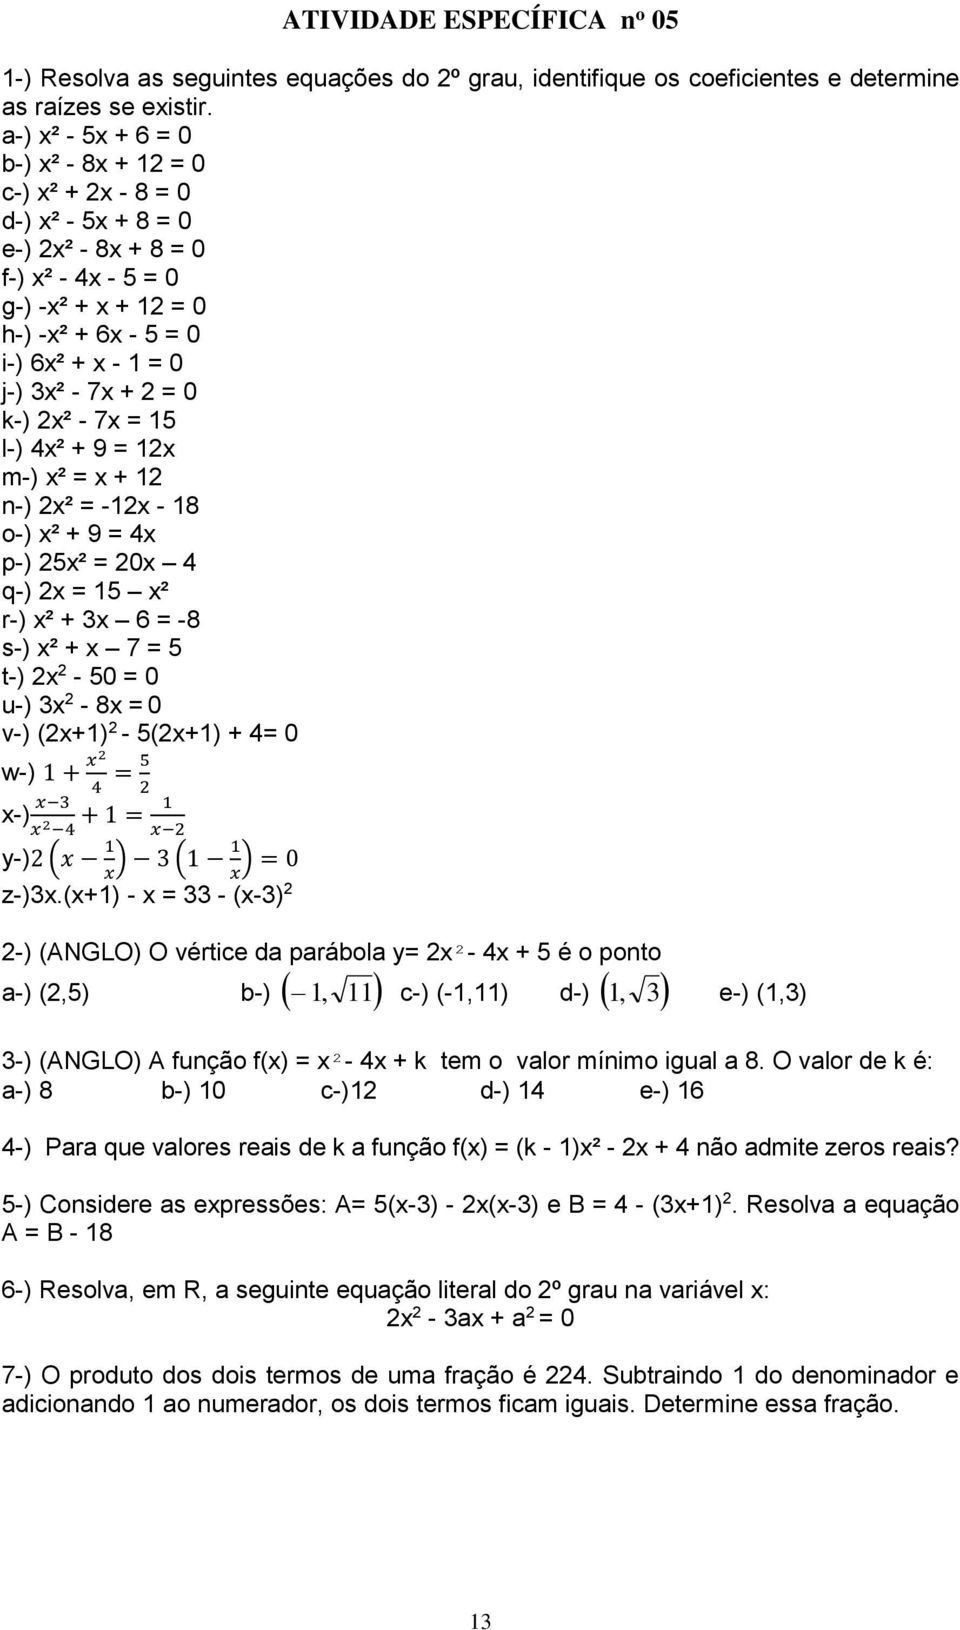 + 9 = x m-) x² = x + n-) x² = -x - 8 o-) x² + 9 = x p-) x² = 0x q-) x = x² r-) x² + x 6 = -8 s-) x² + x = t-) x - 0 = 0 u-) x - 8x = 0 v-) (x+) - (x+) + = 0 w-) + x = x-) x x + = x y-) (x x ) ( x ) =